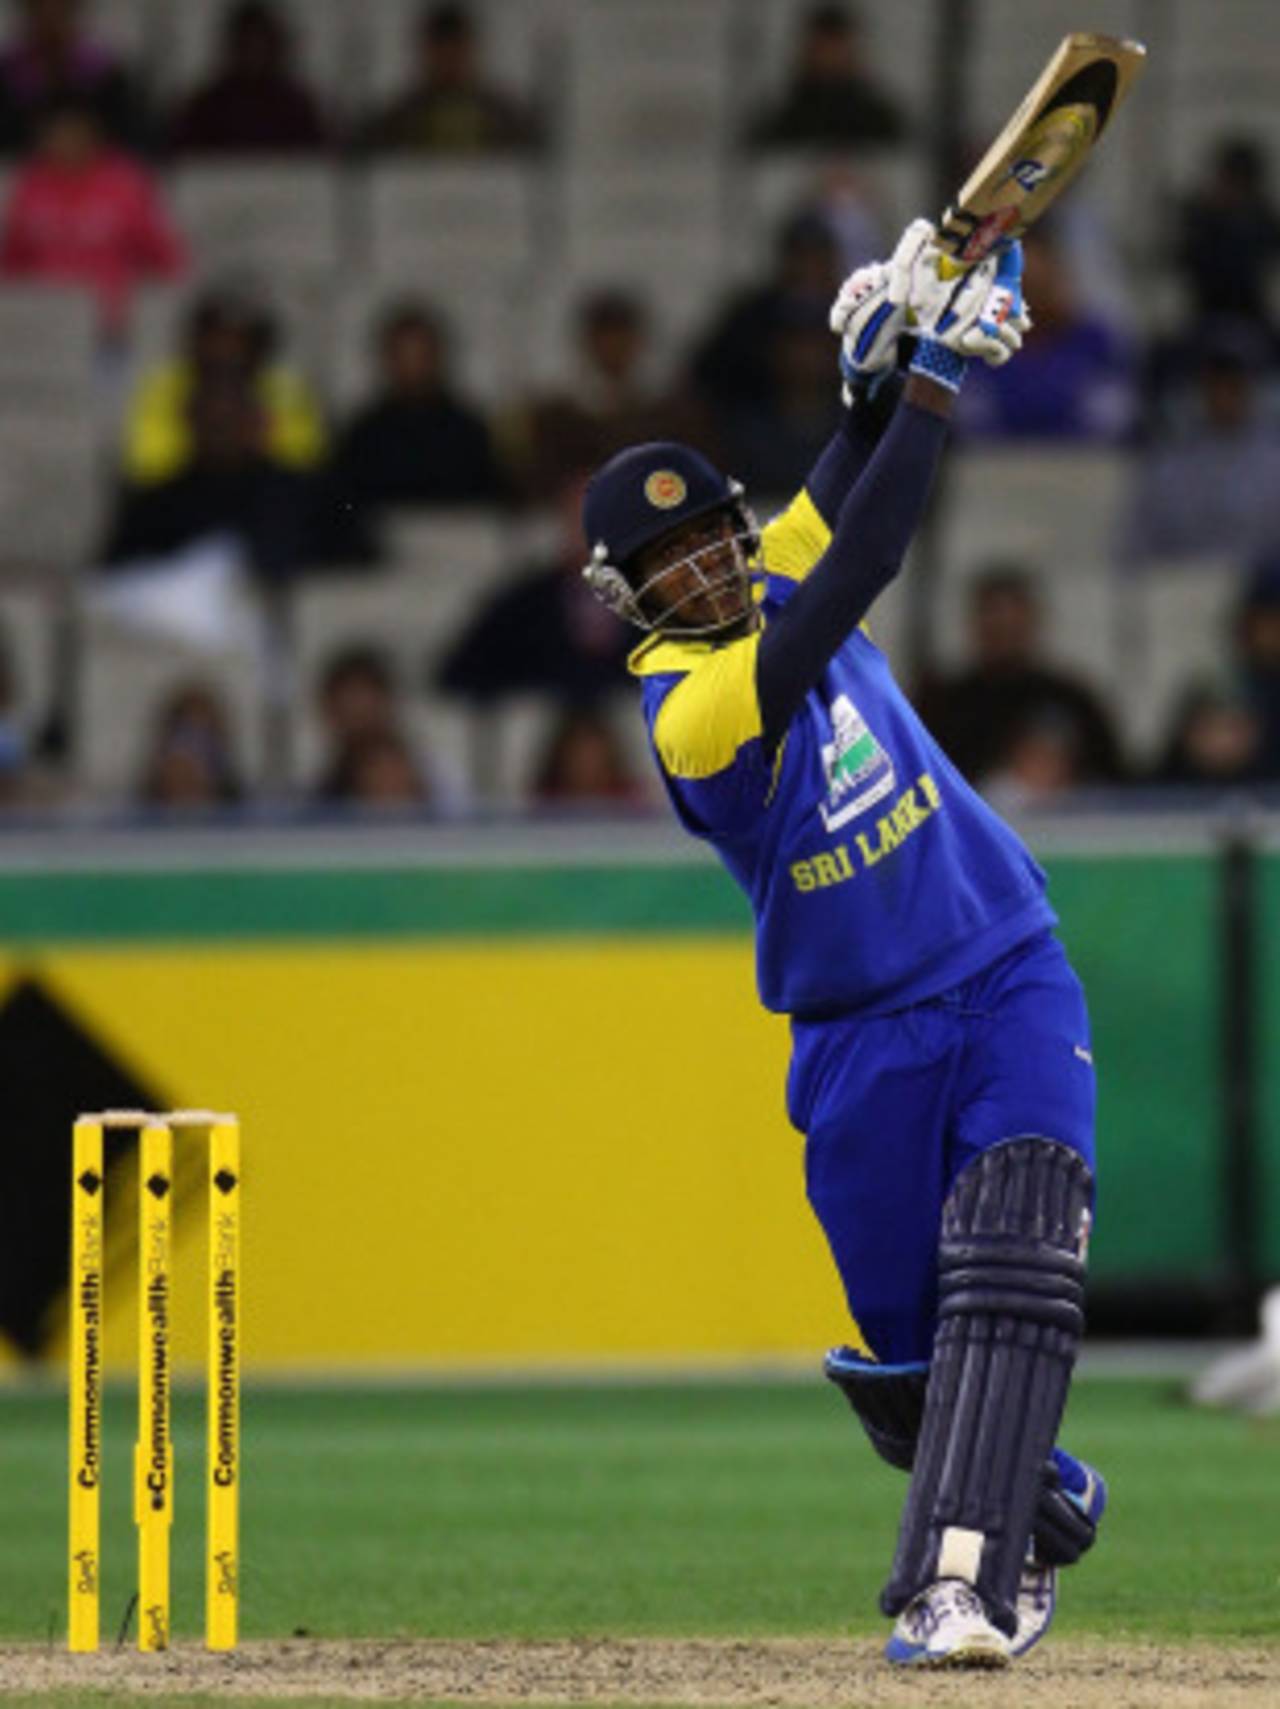 Angelo Mathews launches one down the ground, Australia v Sri Lanka, 1st ODI, Melbourne, November 3, 2010